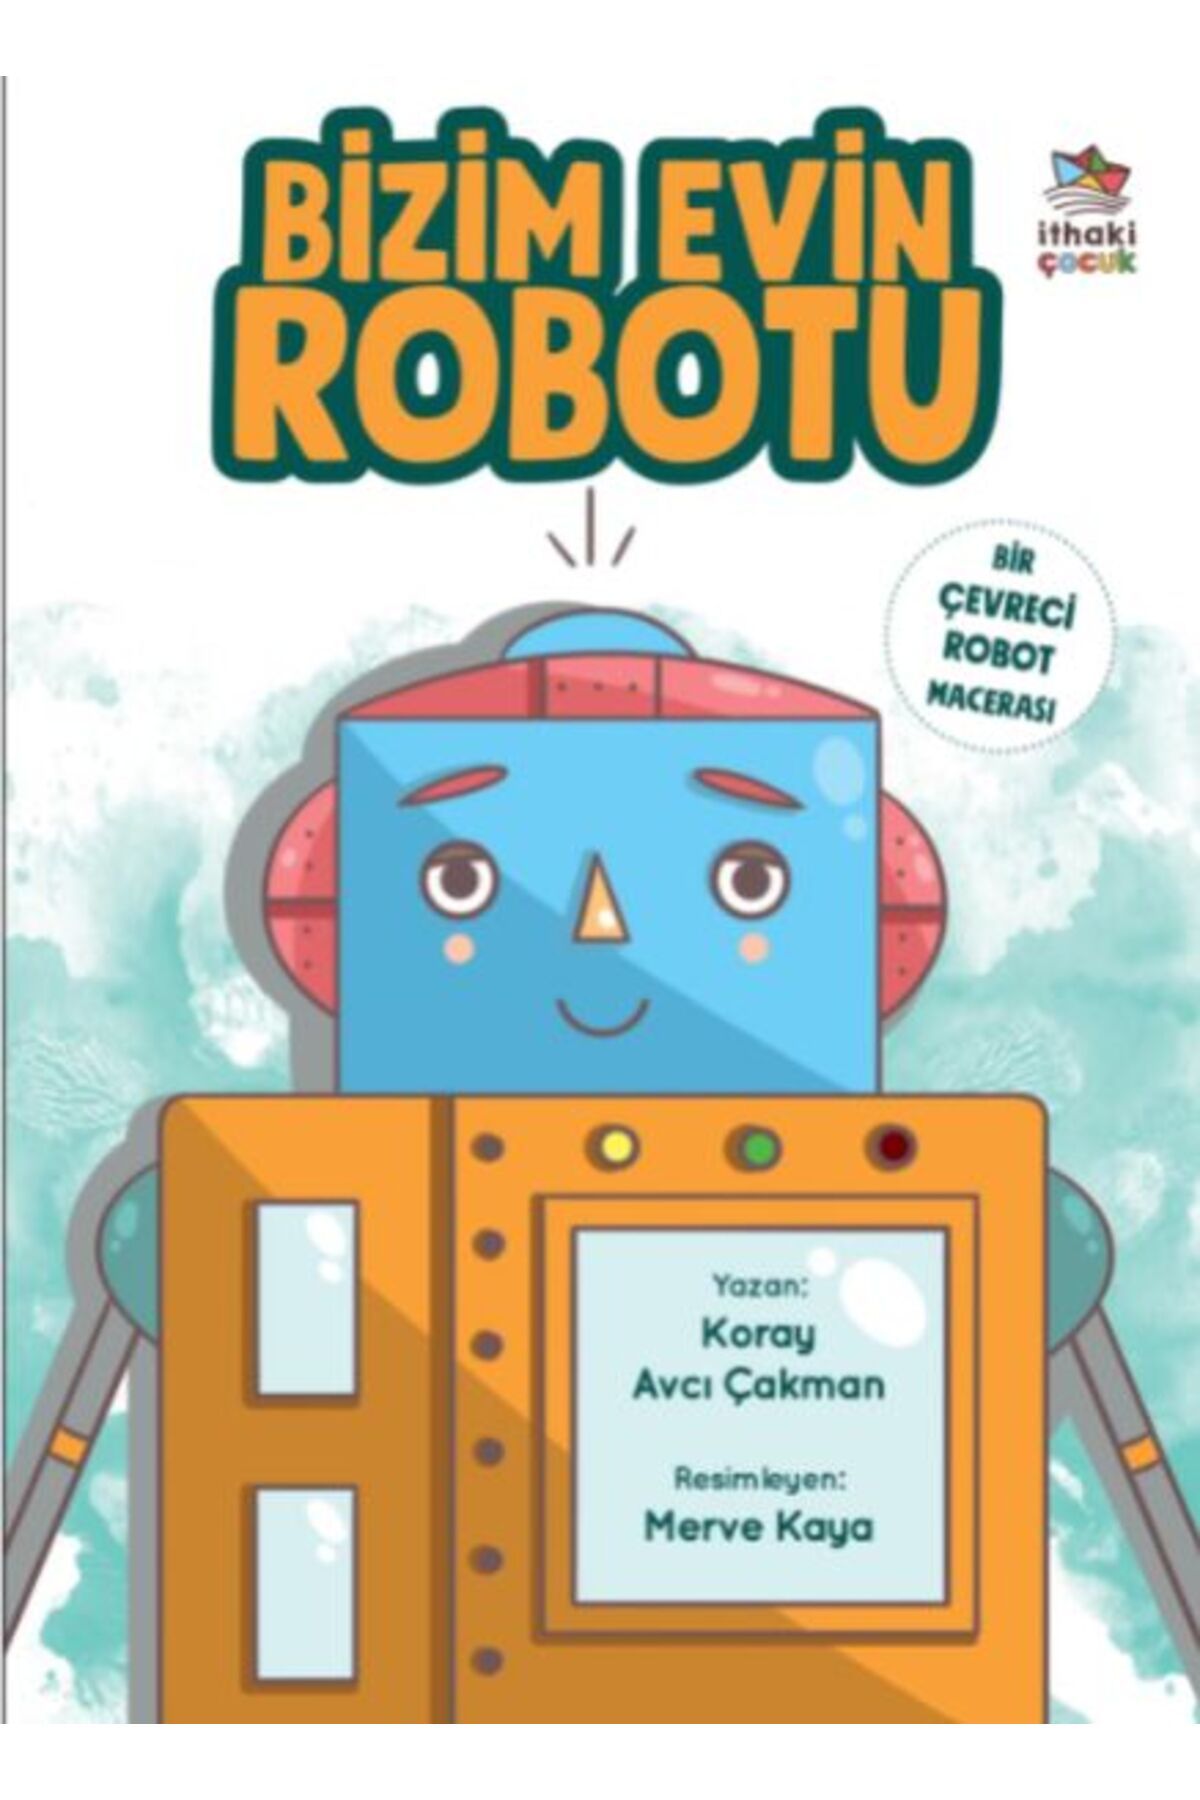 İthaki Yayınları Bizim Evin Robotu - Bir Çevreci Robot Macerası